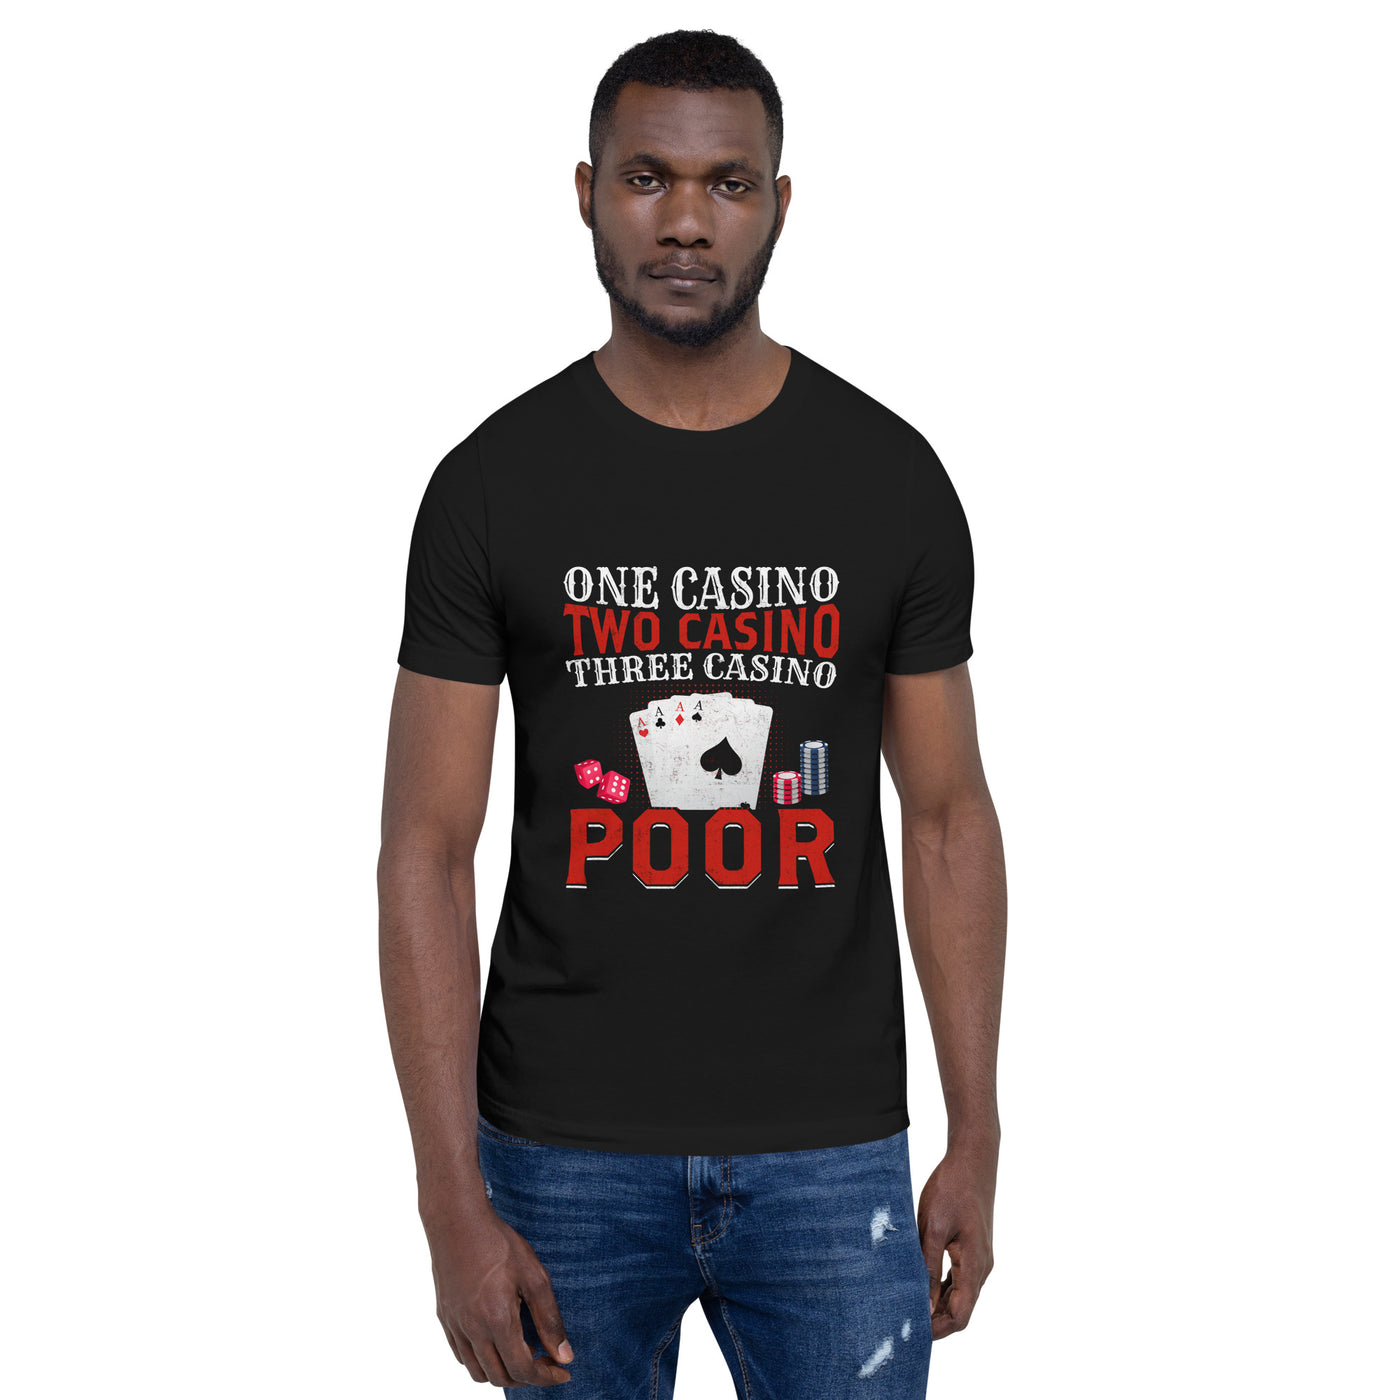 One Casino, Two Casino, Three Casino = Poor - Unisex t-shirt